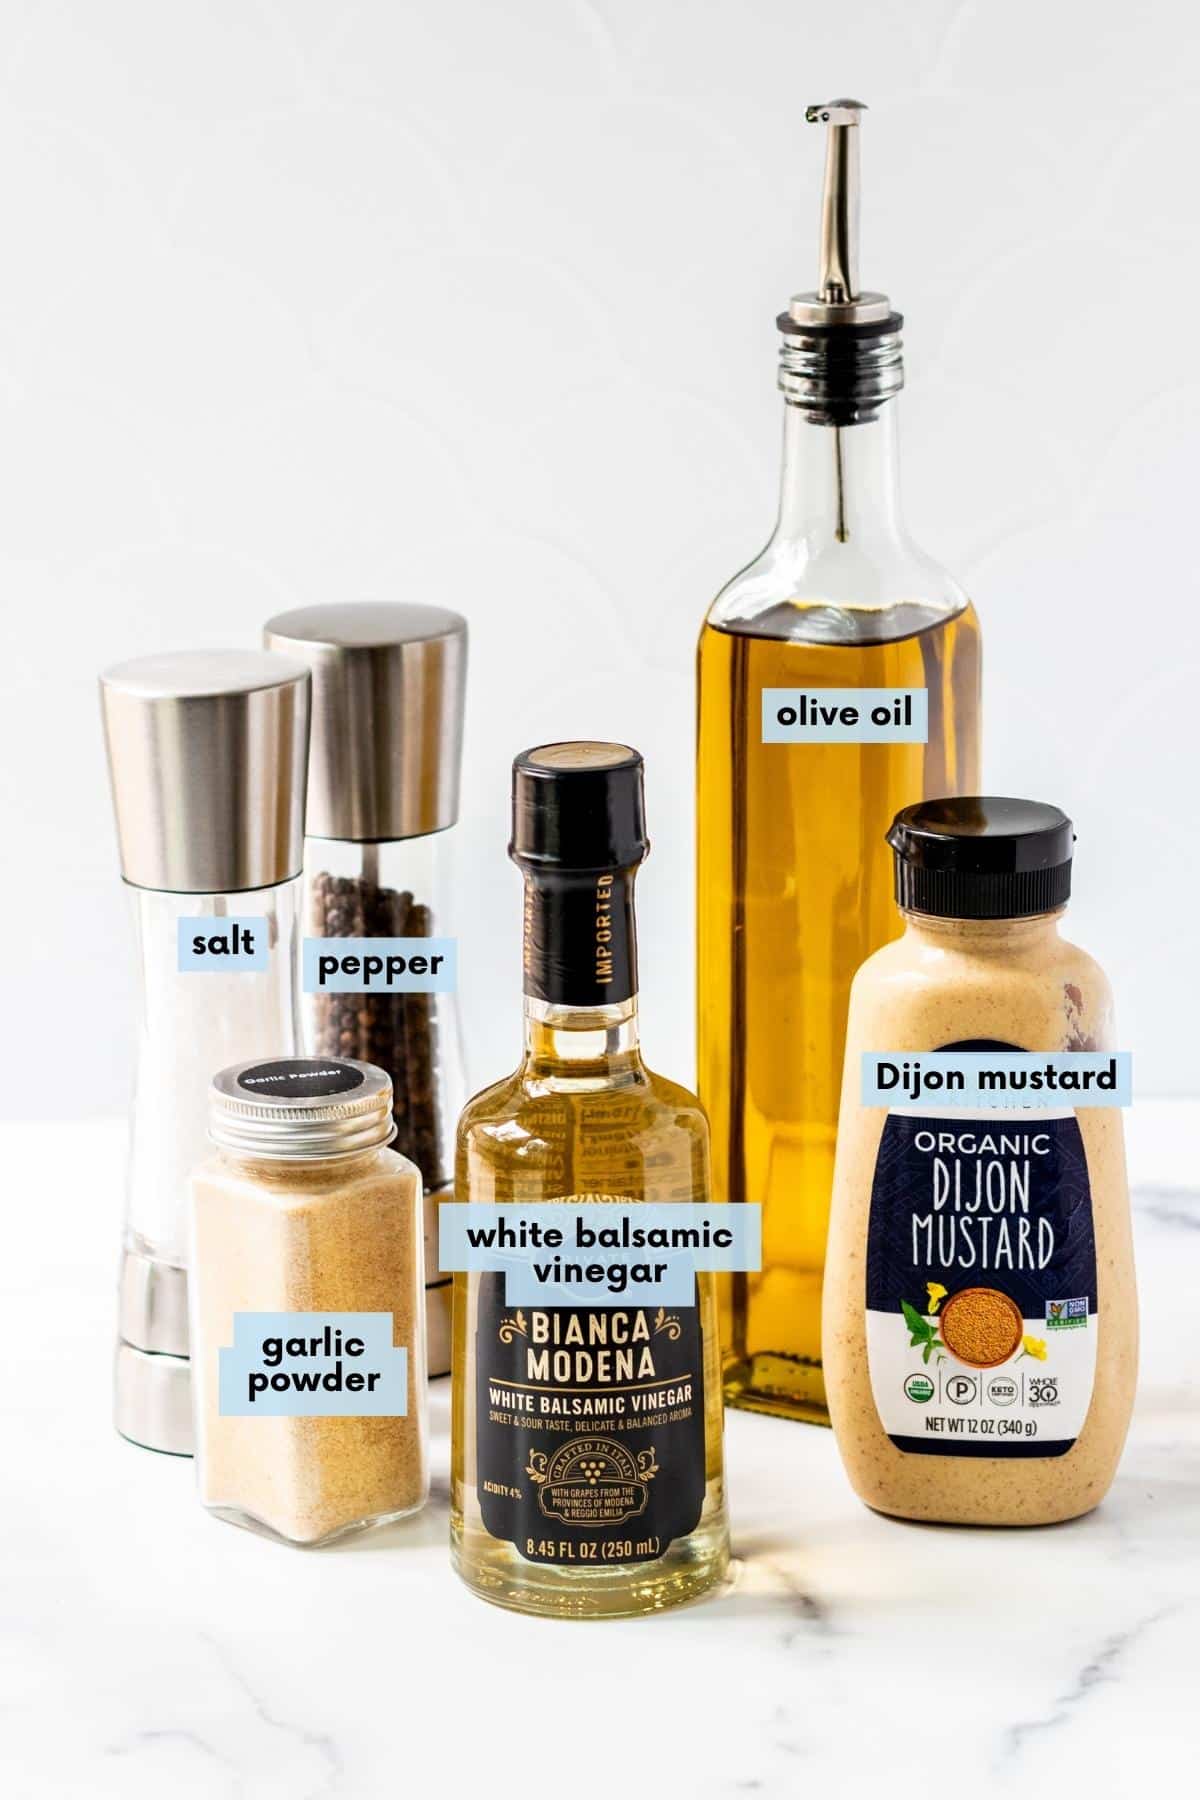 Bottles of olive oil, white balsamic vinegar, and Dijon mustard, and salt, pepper, and garlic powder.